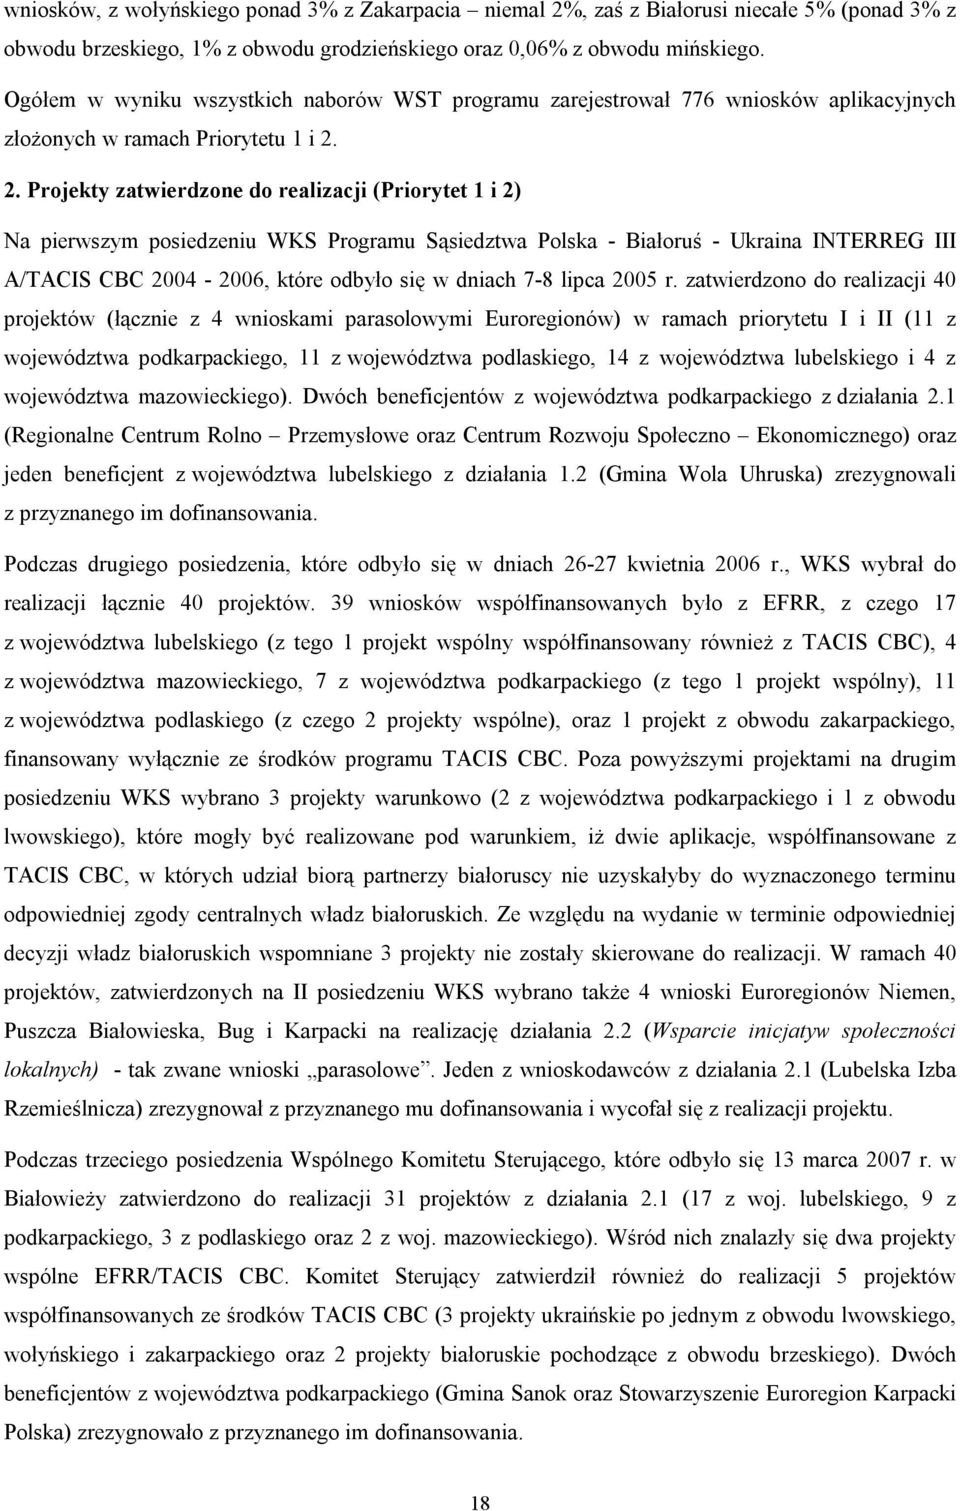 2. Projekty zatwierdzone do realizacji (Priorytet 1 i 2) Na pierwszym posiedzeniu WKS Programu Sąsiedztwa Polska - Białoruś - Ukraina INTERREG III A/TACIS CBC 2004-2006, które odbyło się w dniach 7-8